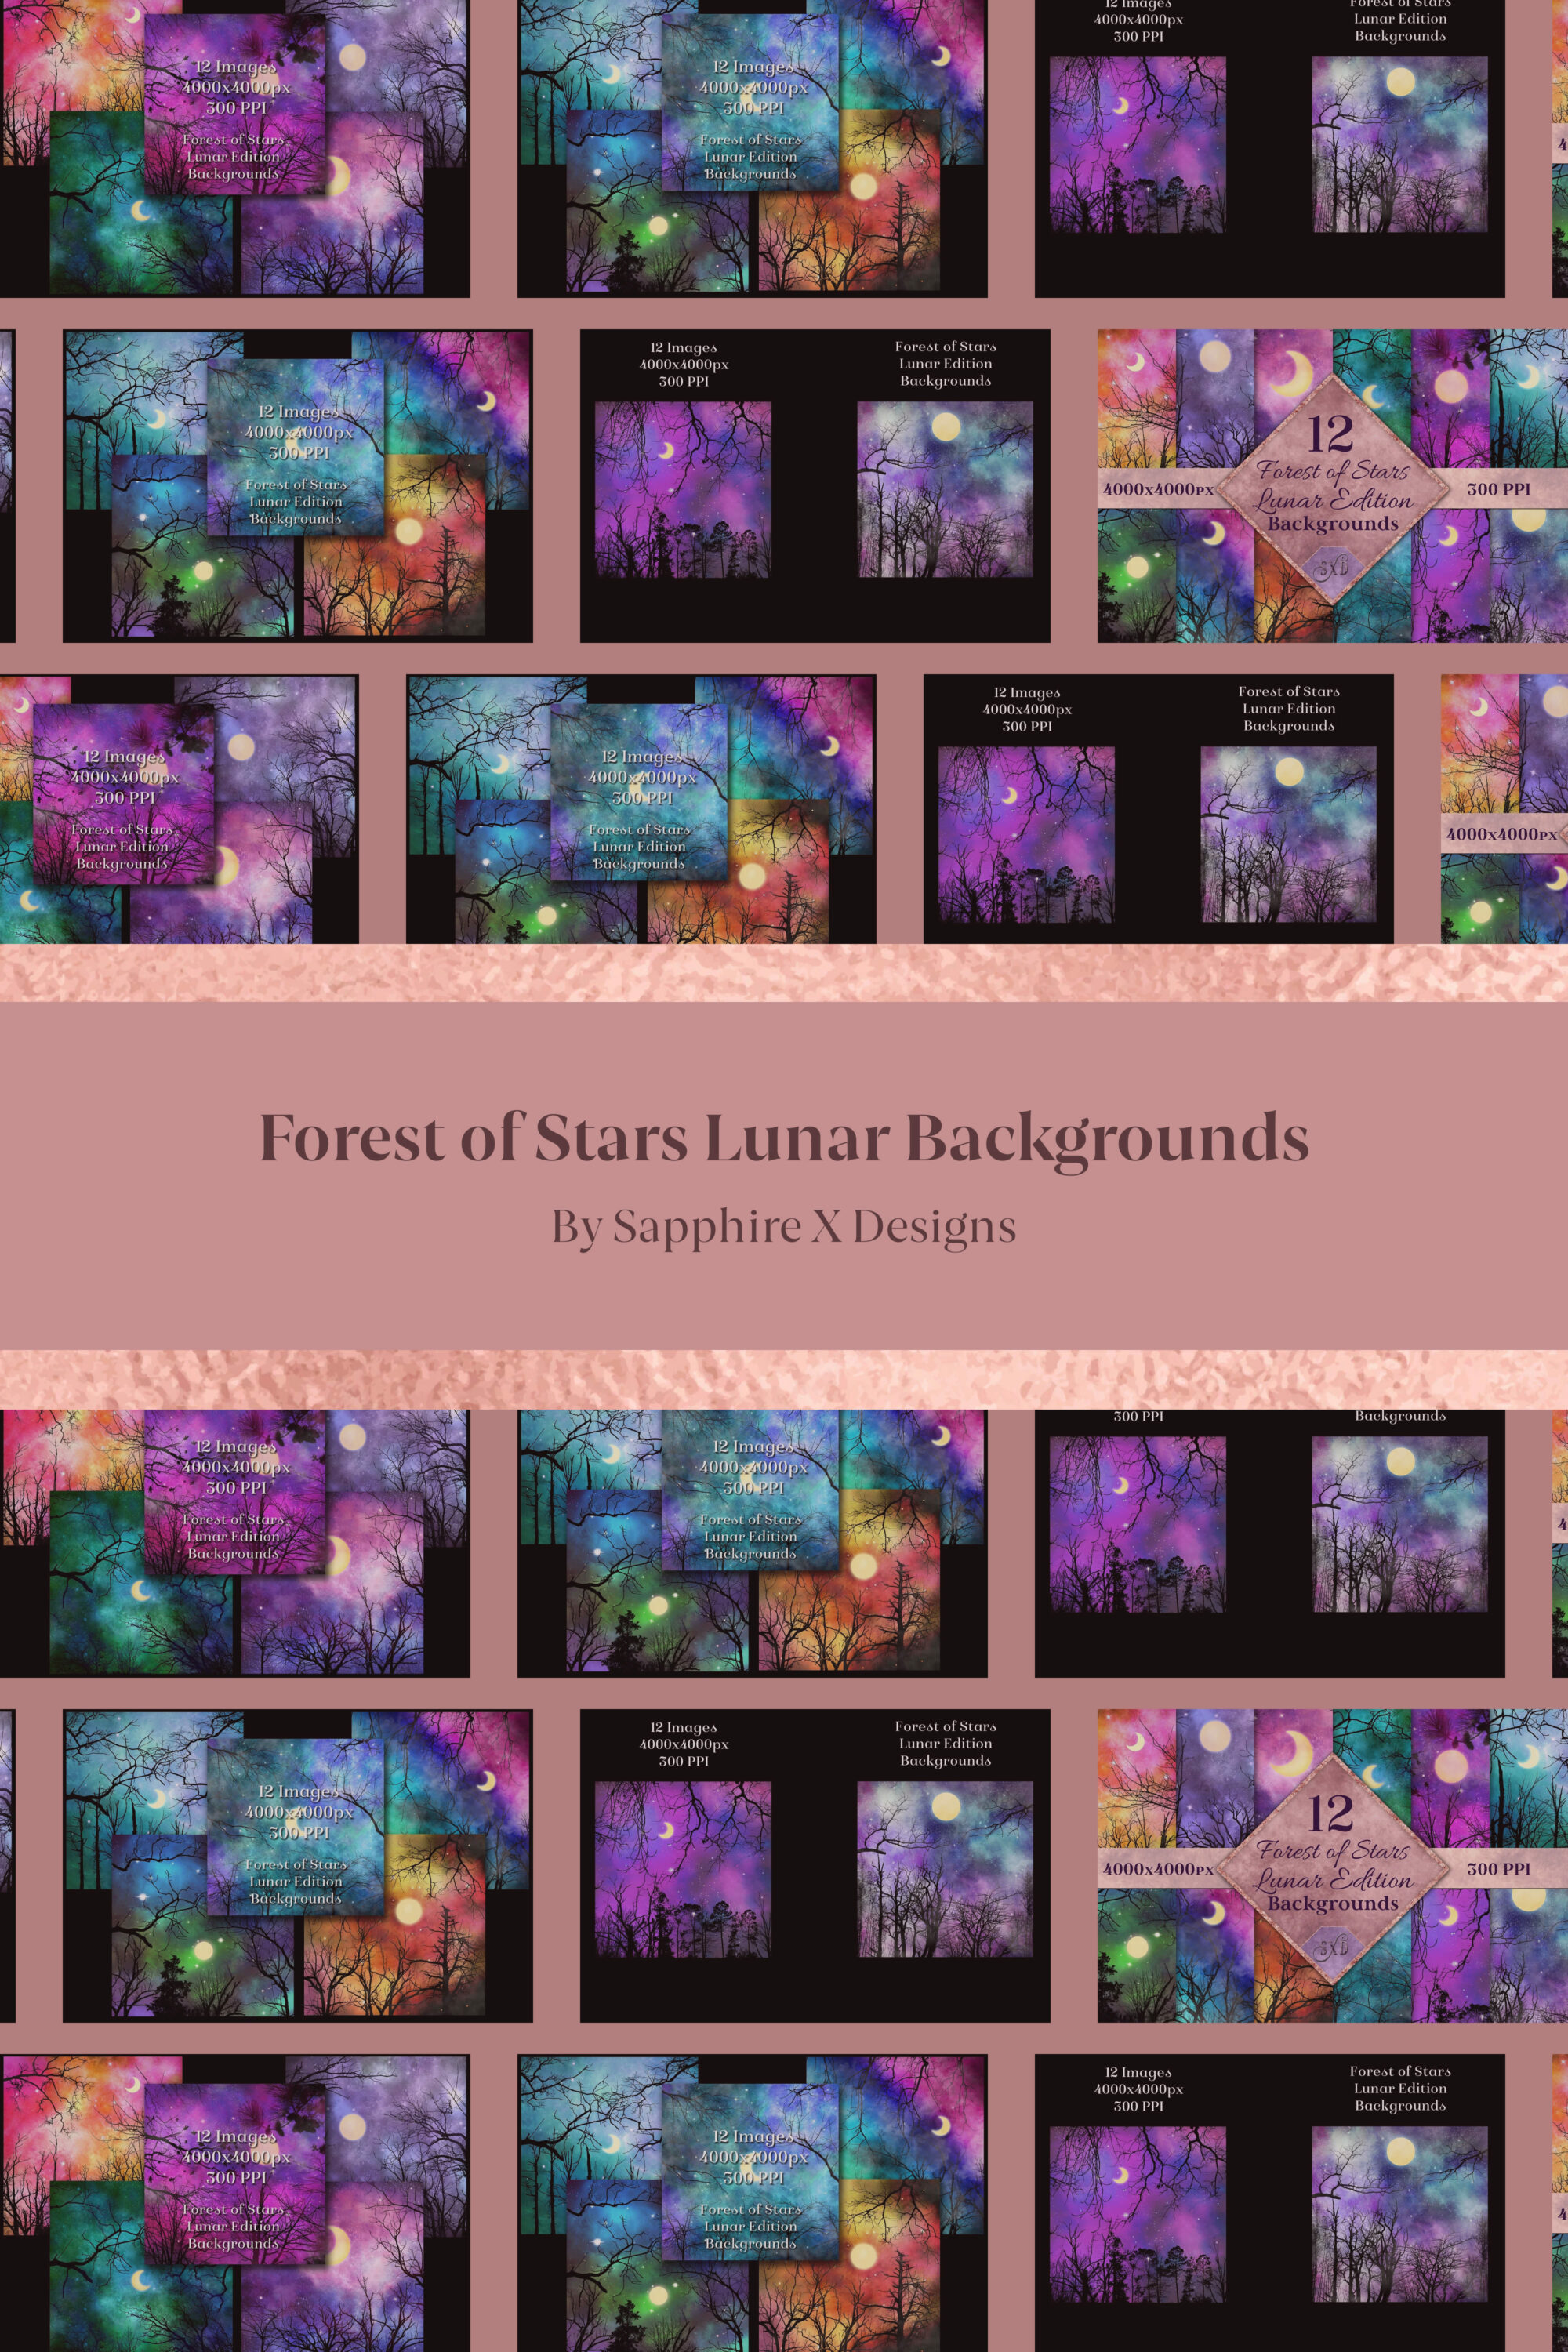 Forest of Stars Lunar Backgrounds pinterest image.